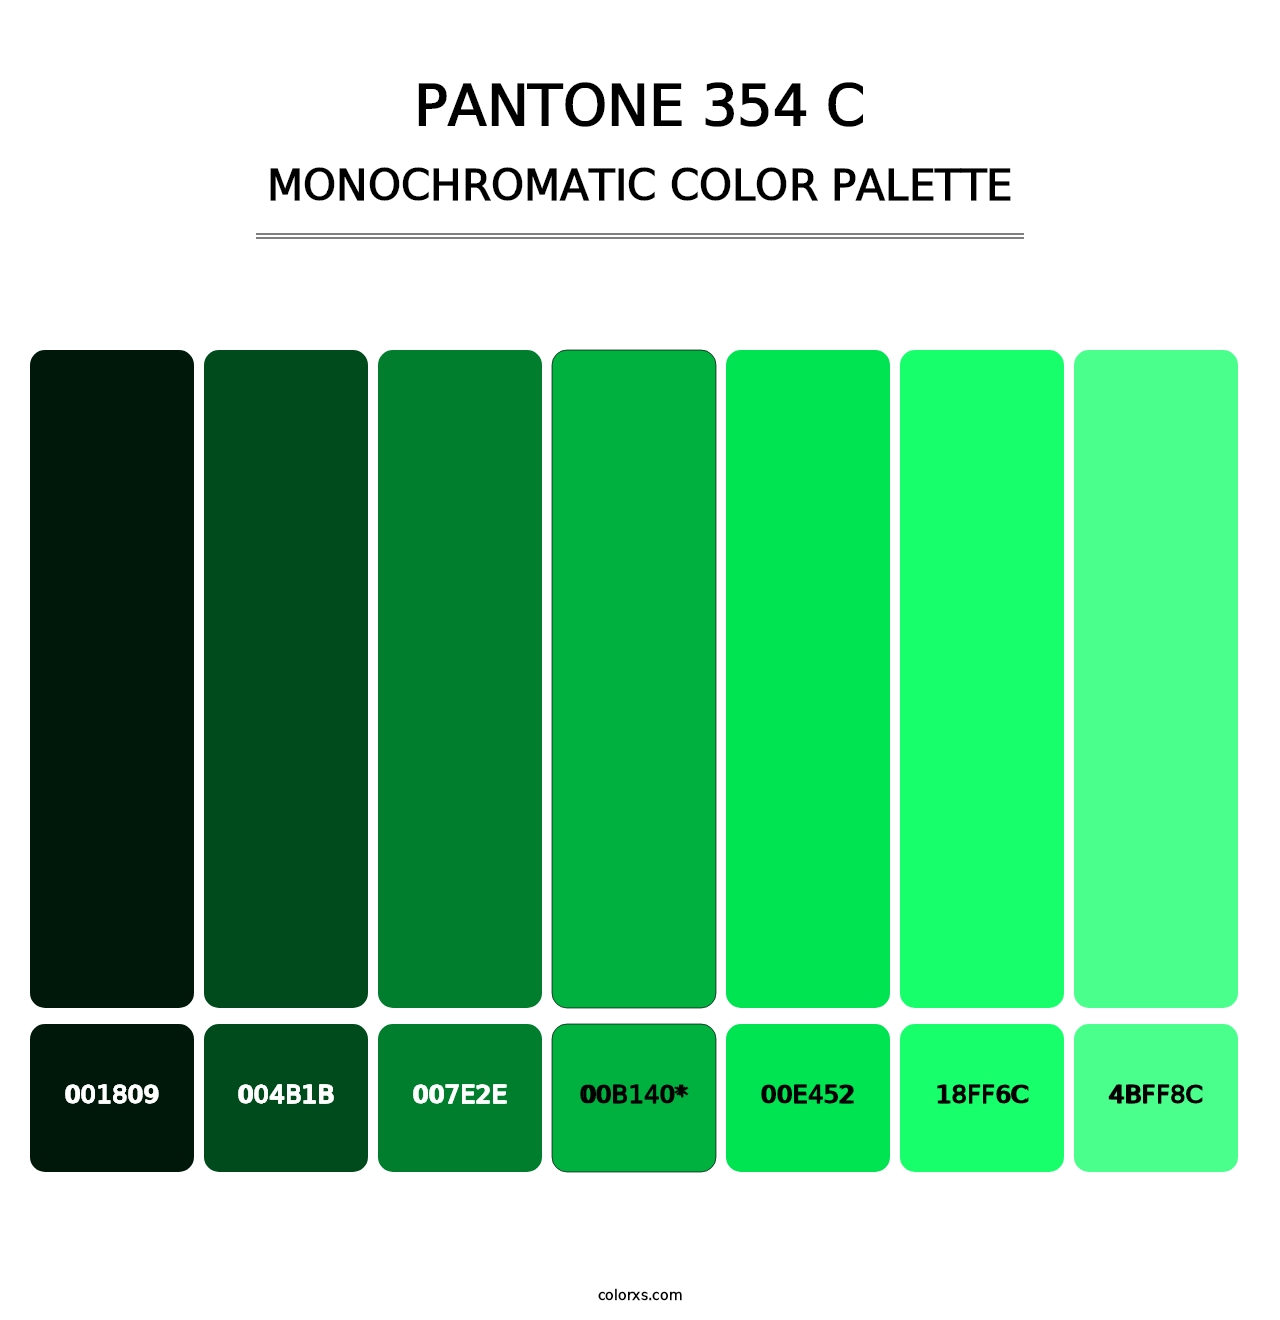 PANTONE 354 C - Monochromatic Color Palette